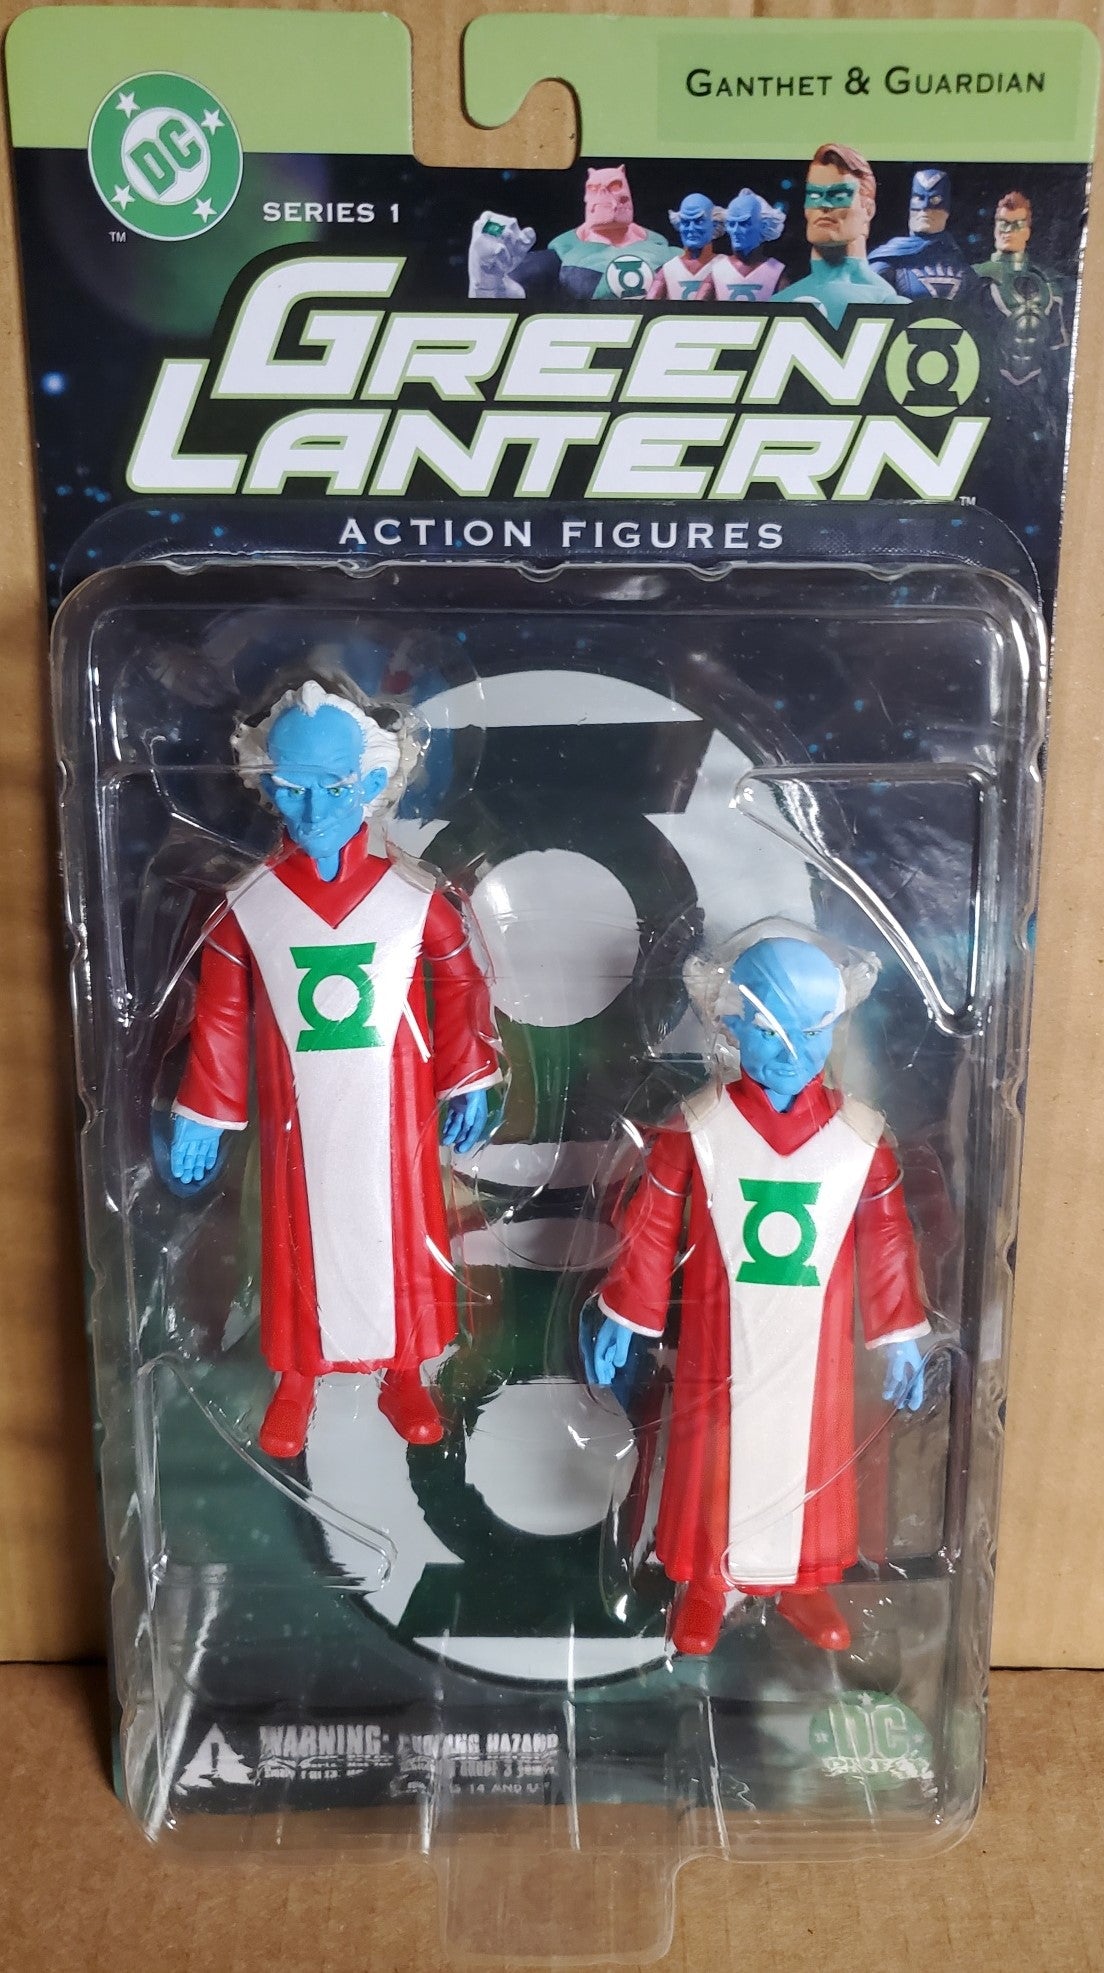 Green Lantern series 1 GANTHET & GUARDIAN action figure 